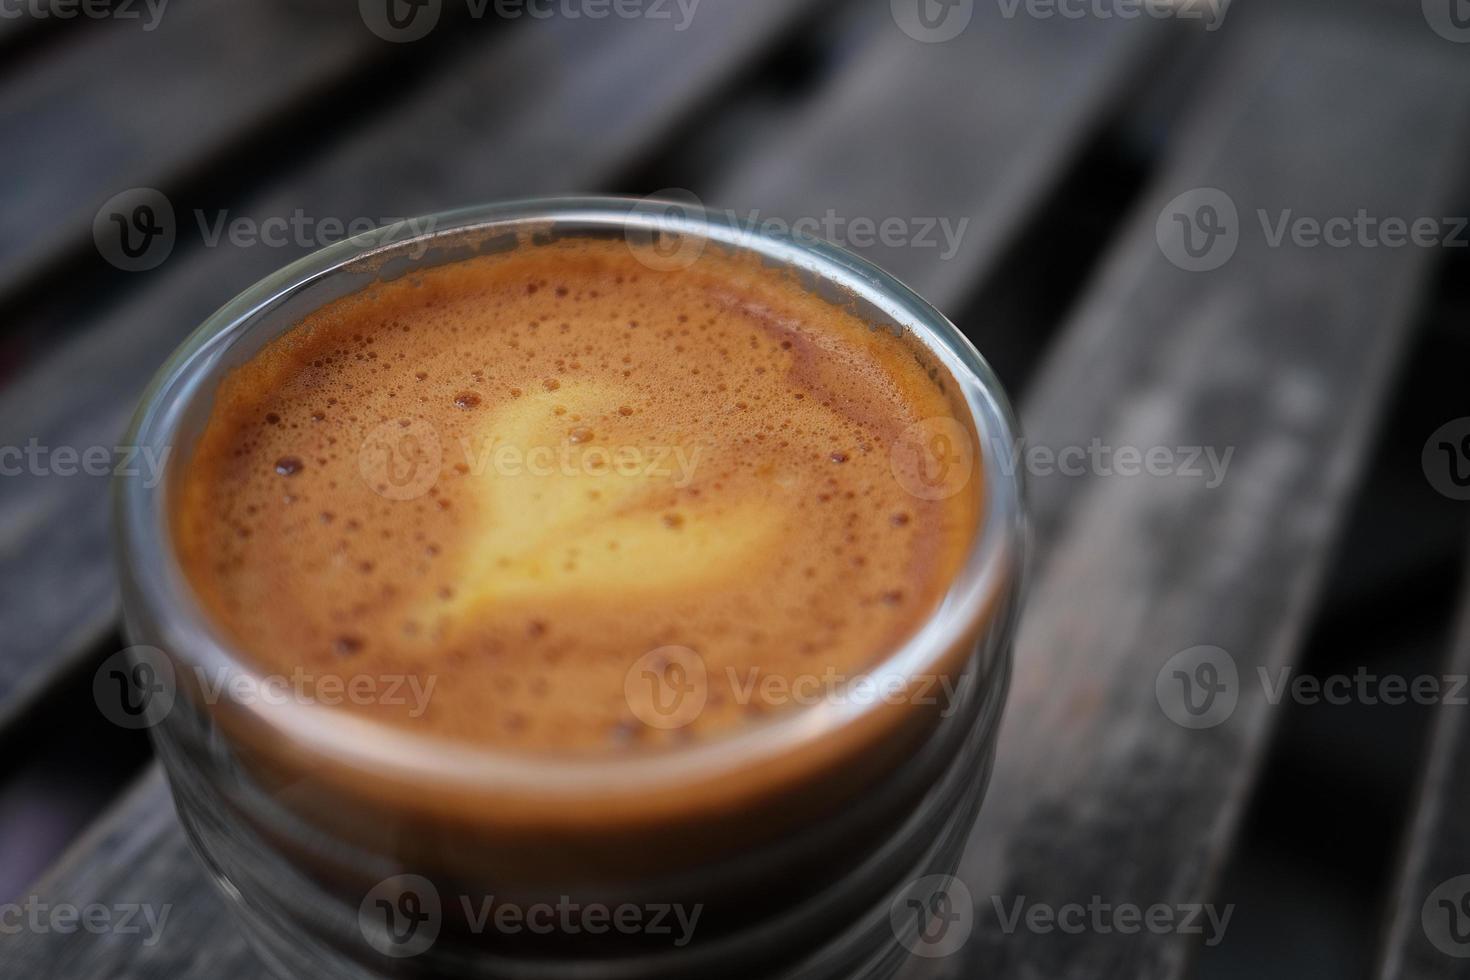 foto ravvicinata di un bicchiere da caffè con un mix di caffè espresso e succo d'arancia, che mostra una schiuma brillante con sfondo sfocato.